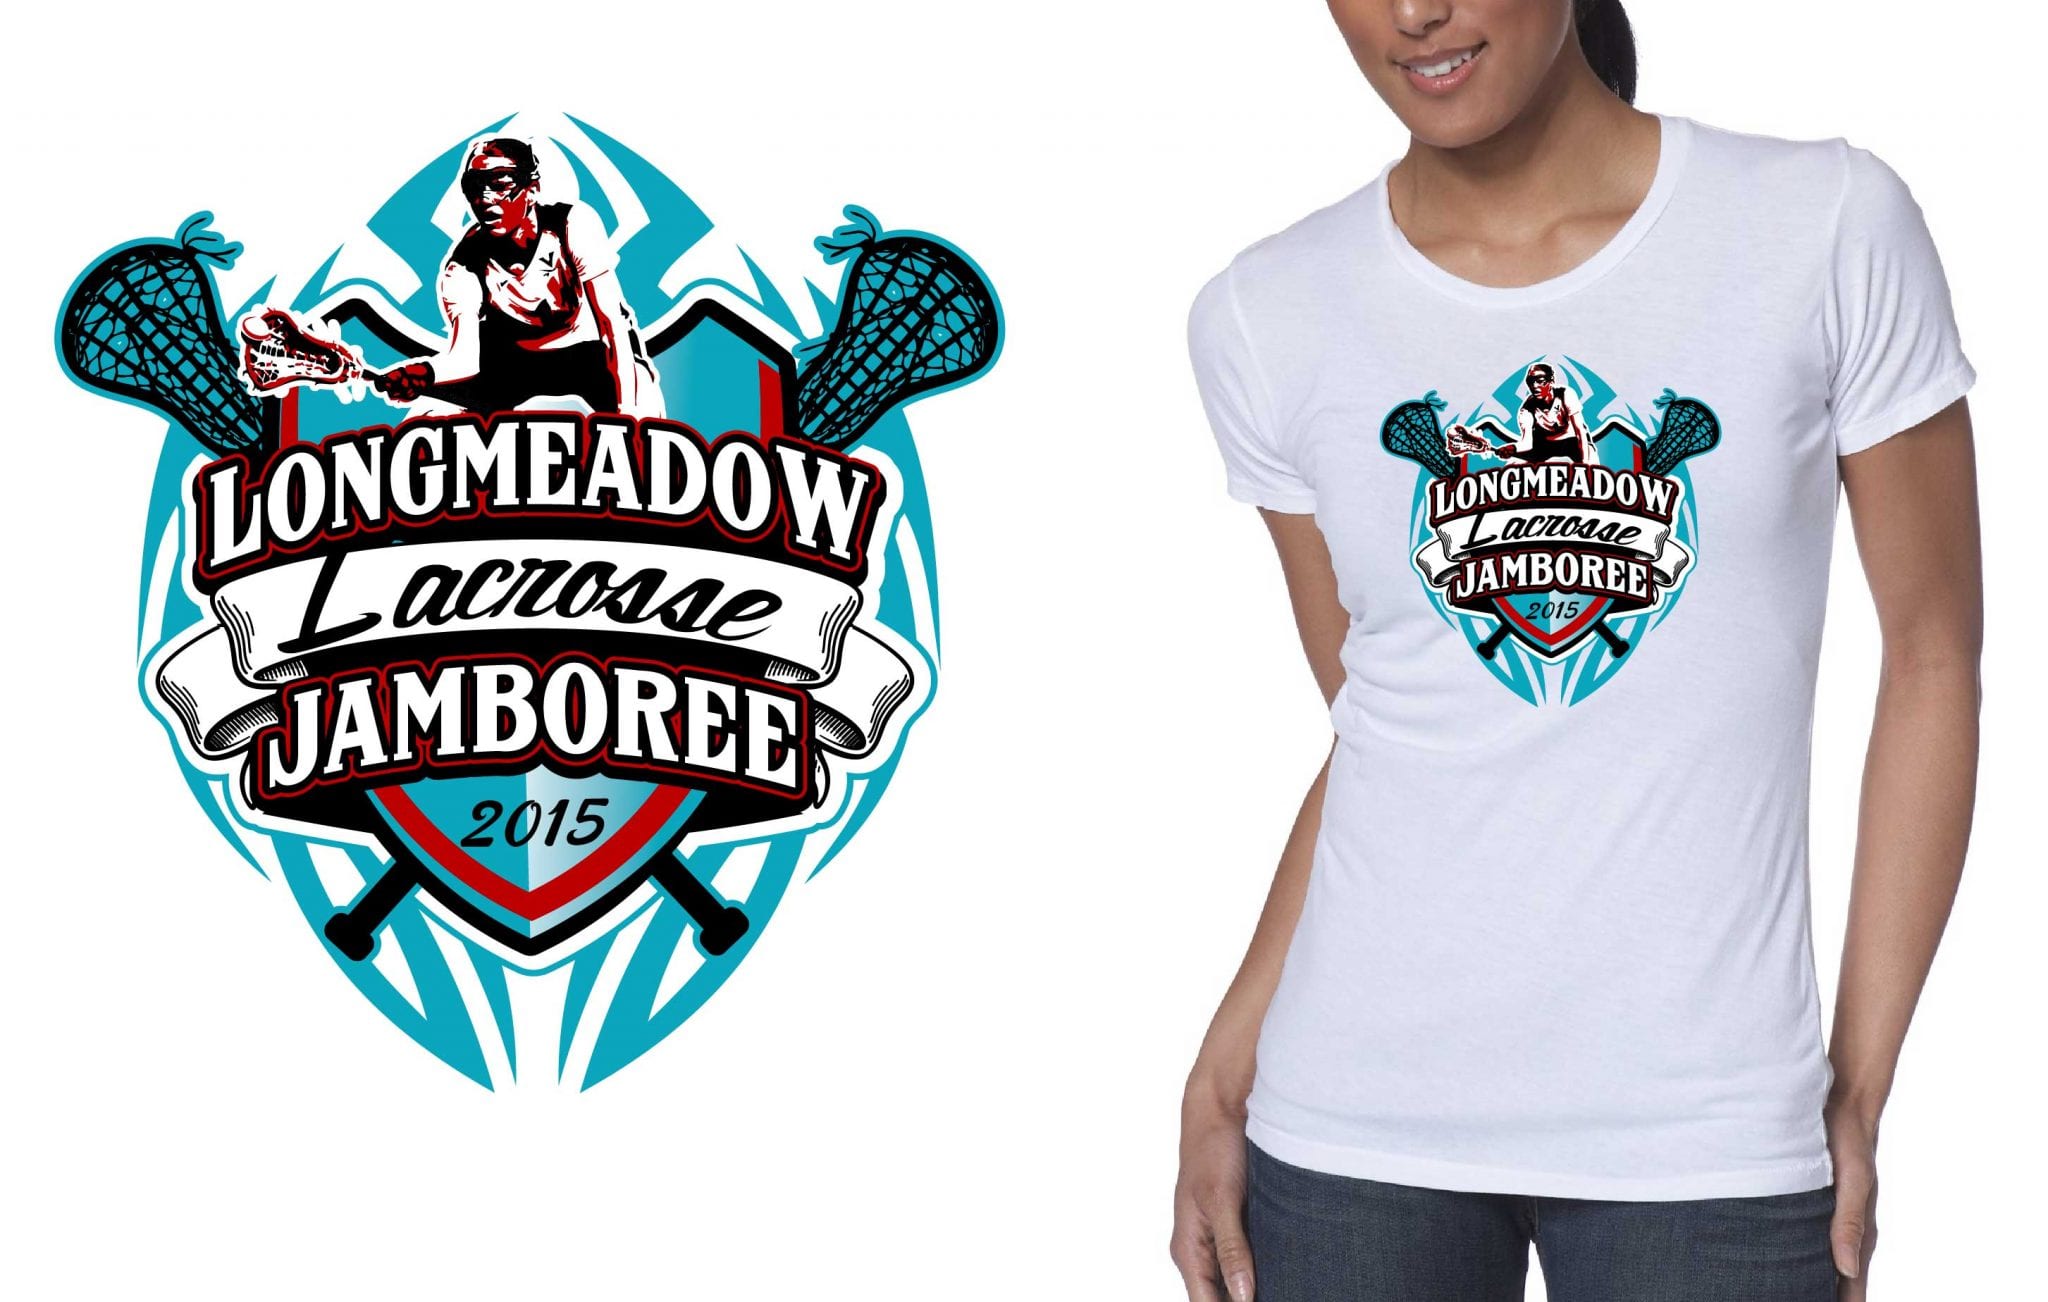 2015 Longmeadow Lacrosse Jamboree best t-shirt logo design